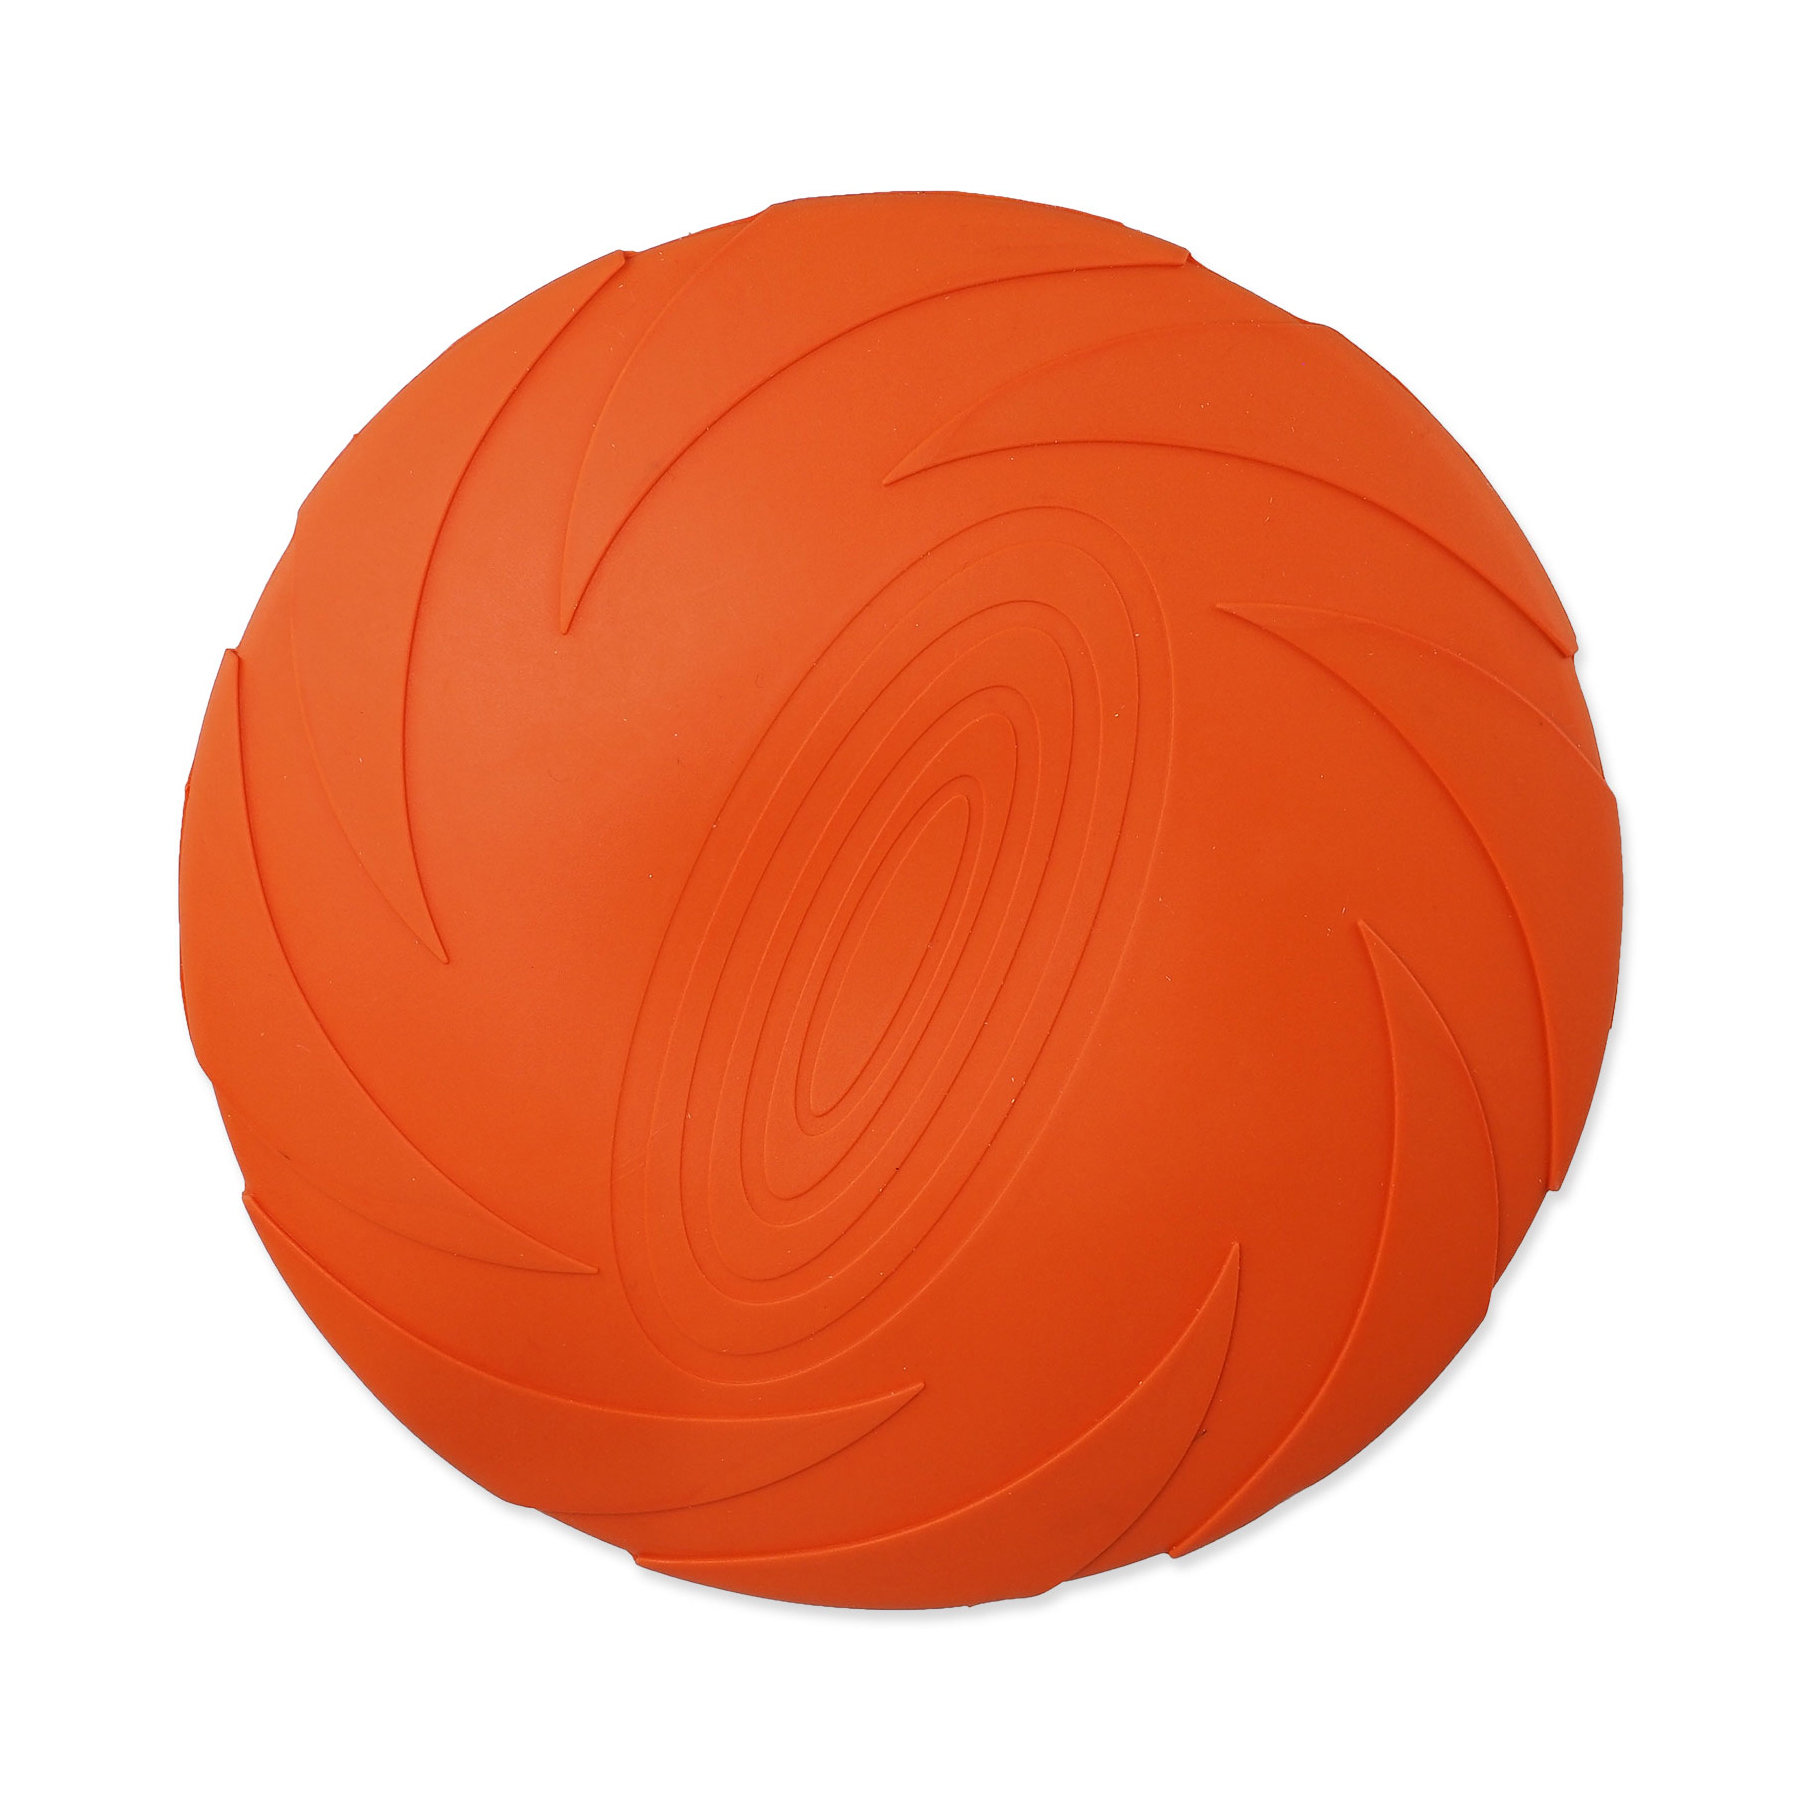 Dog Fantasy Hračka disk plovoucí oranžový 15 cm Dog Fantasy